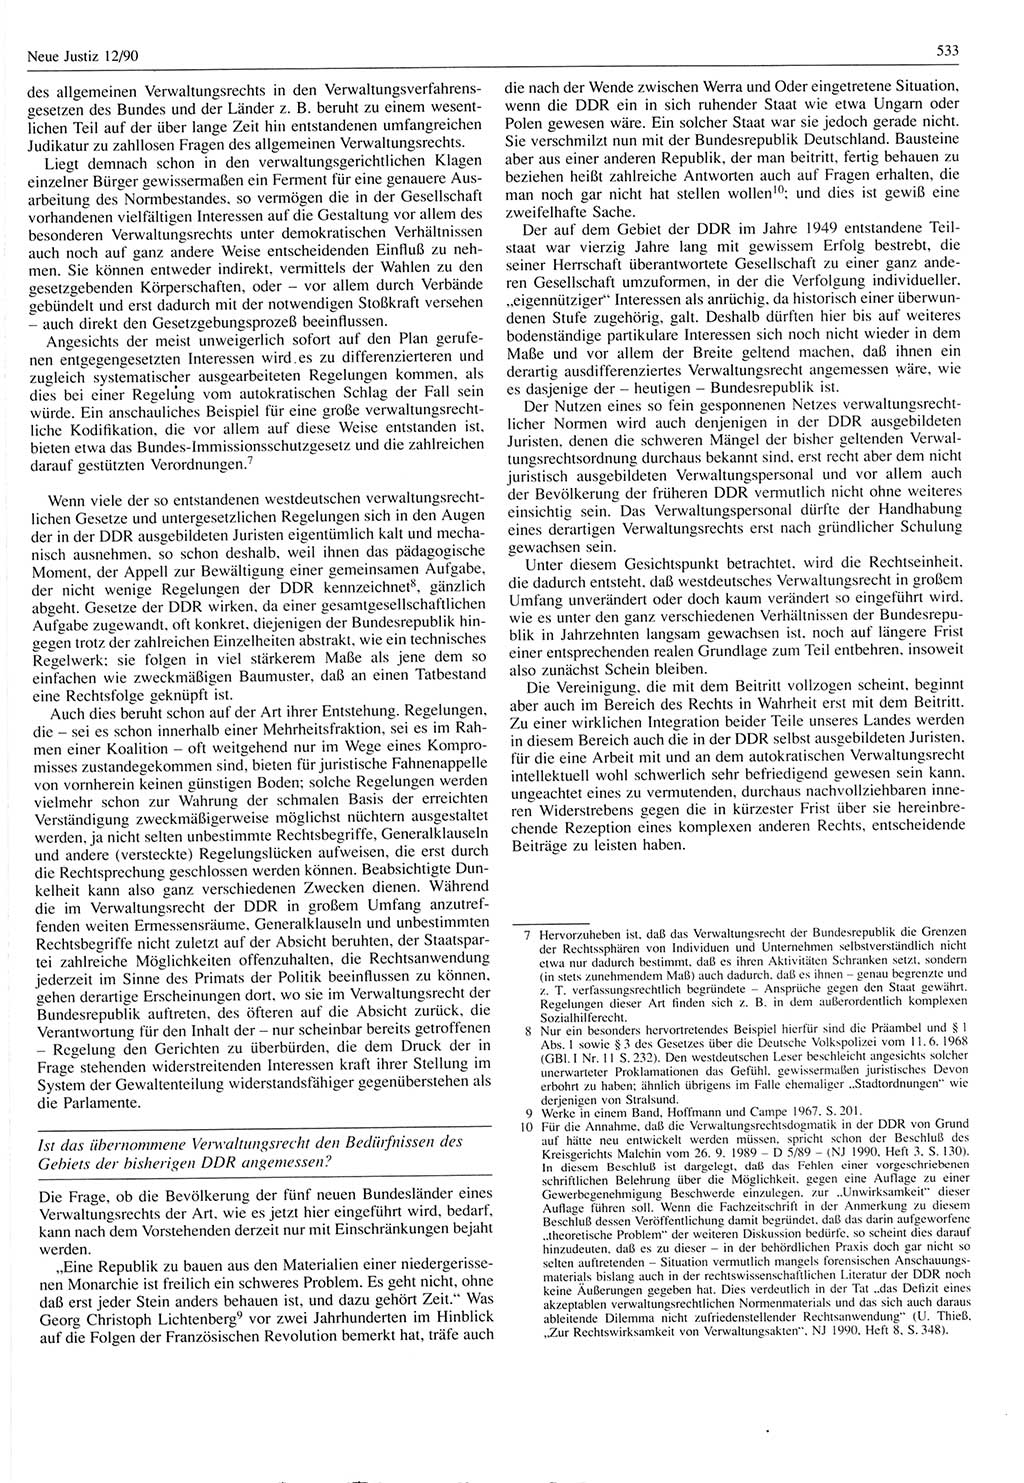 Neue Justiz (NJ), Zeitschrift für Rechtsetzung und Rechtsanwendung [Deutsche Demokratische Republik (DDR)], 44. Jahrgang 1990, Seite 533 (NJ DDR 1990, S. 533)